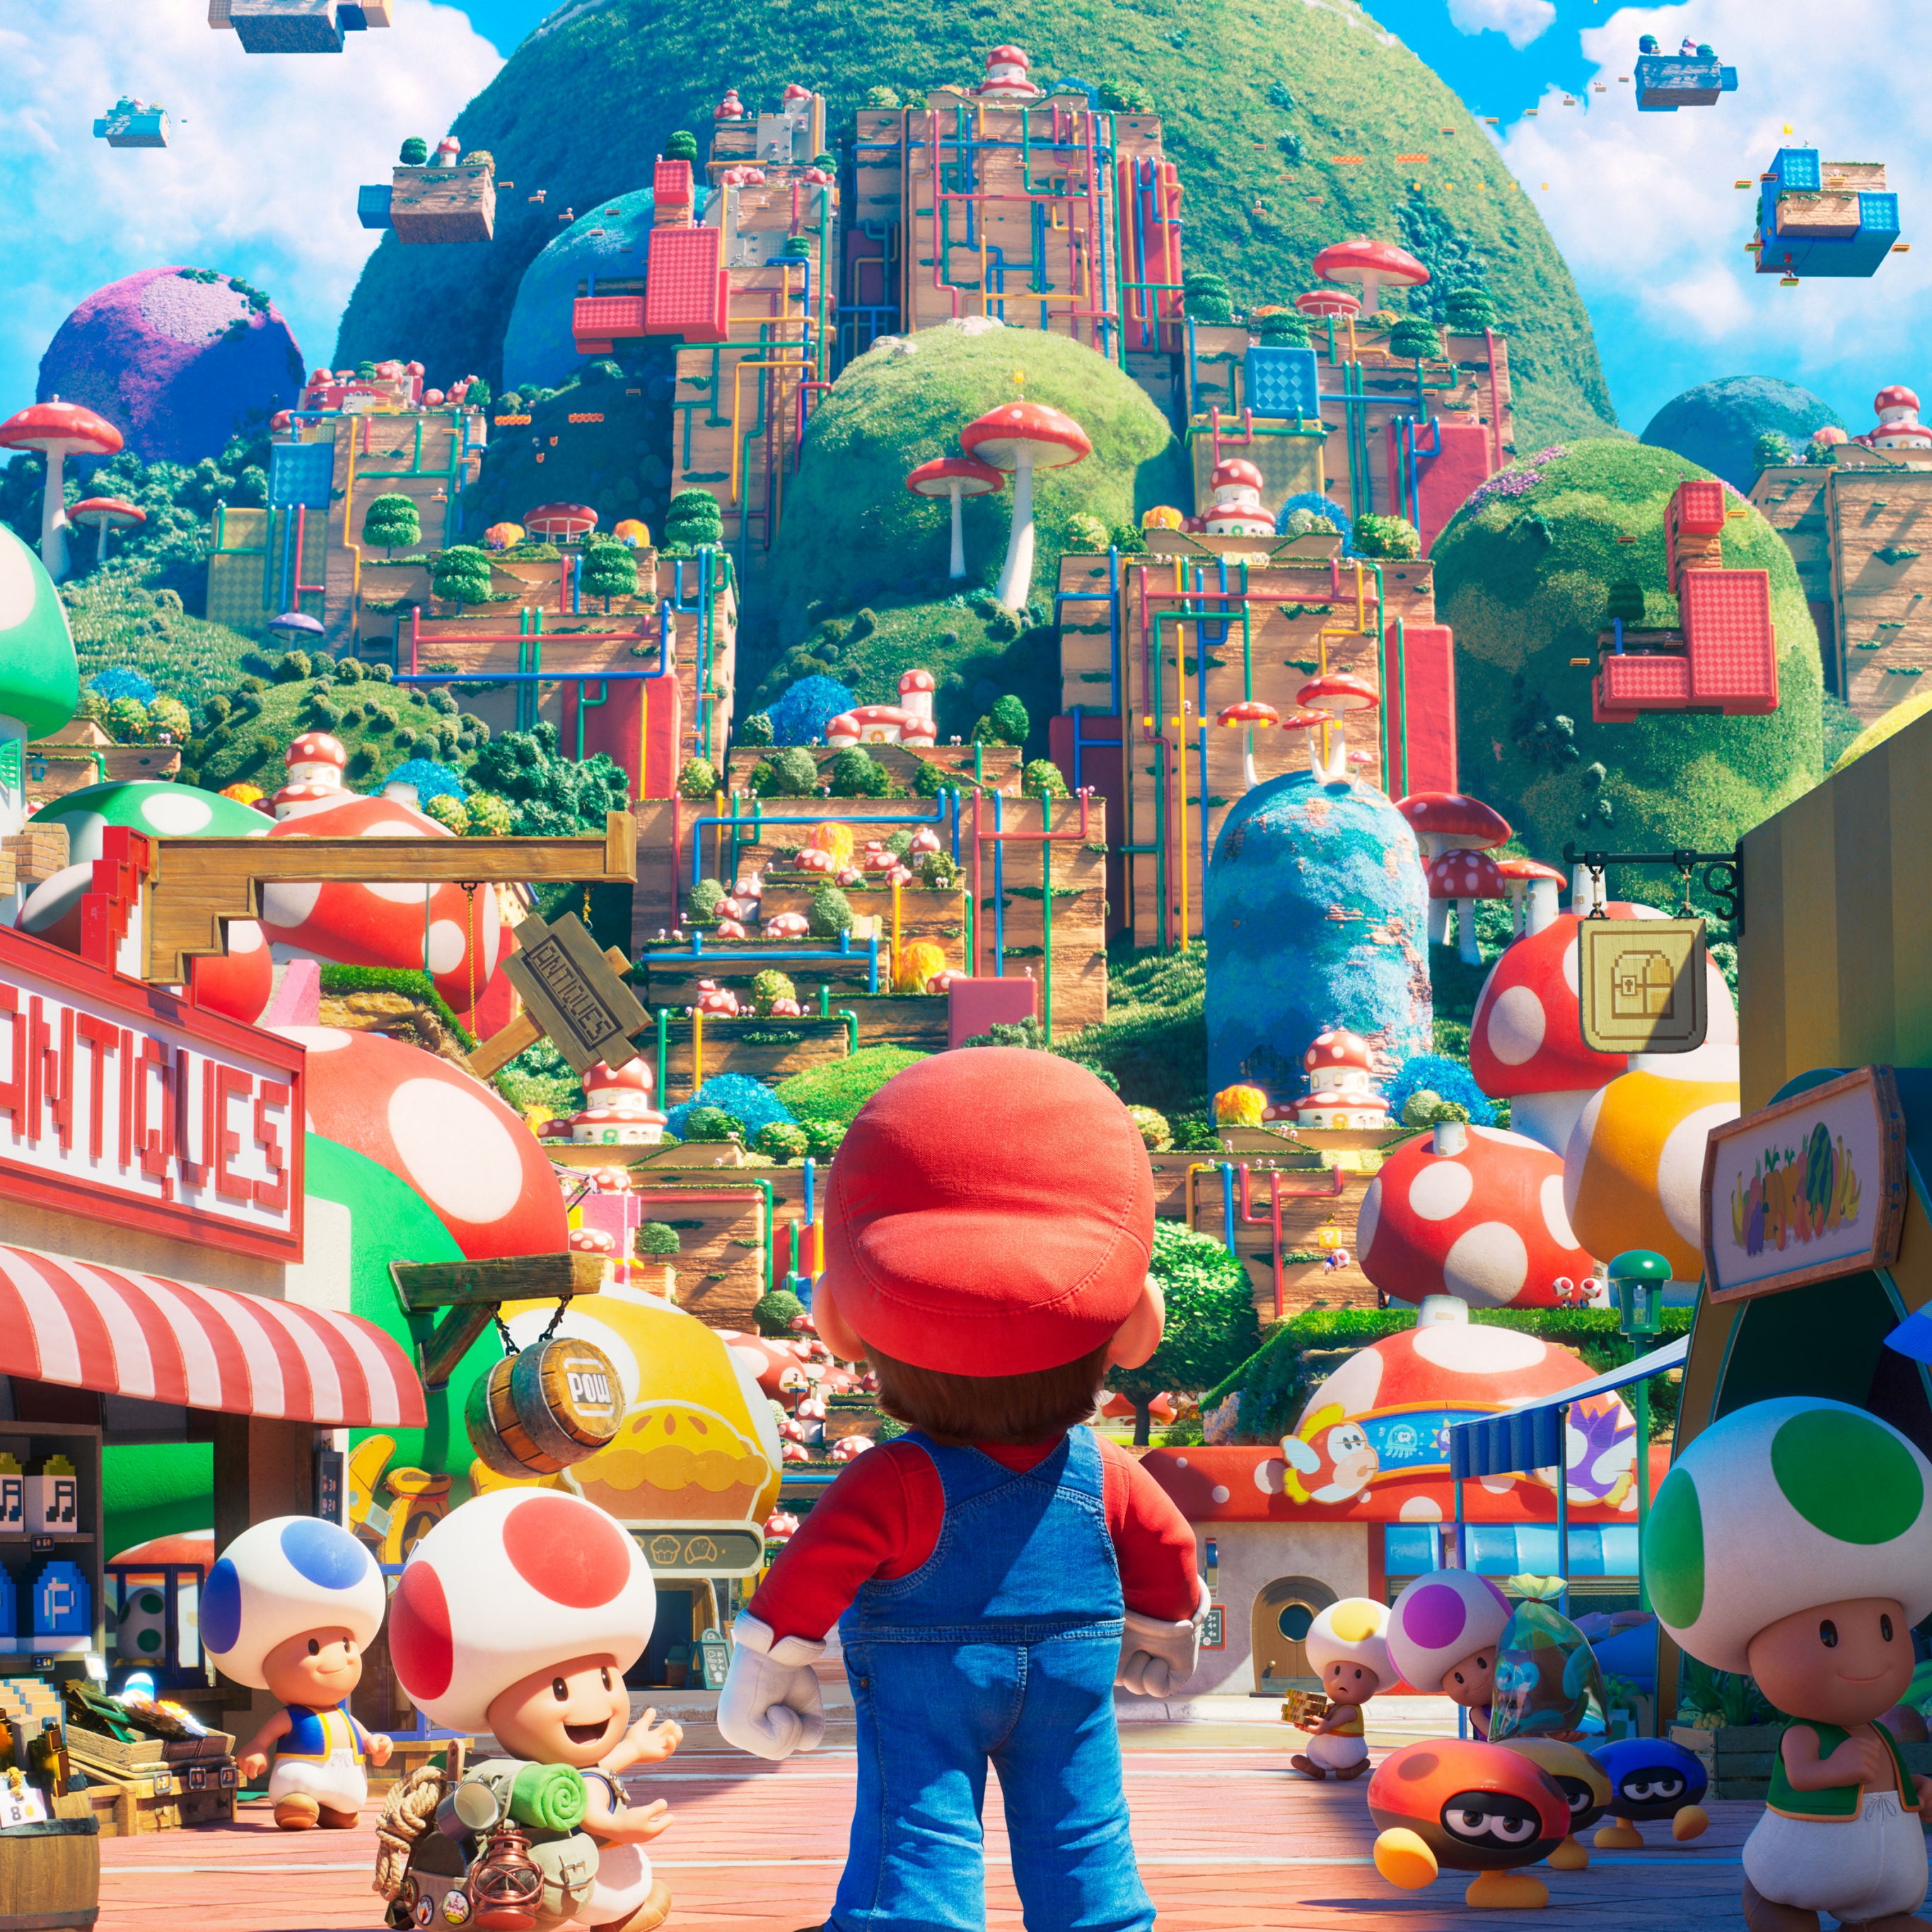 Tình yêu dành cho trò chơi kinh điển Super Mario Bros sẽ được tái hiện hết sức sống động qua bộ hình nền phim đồ họa chất lượng cao. Chắc chắn bạn sẽ thích thú khi được ngắm nhìn Mario, Luigi và các nhân vật hài hước khác trên màn hình nhà bạn.